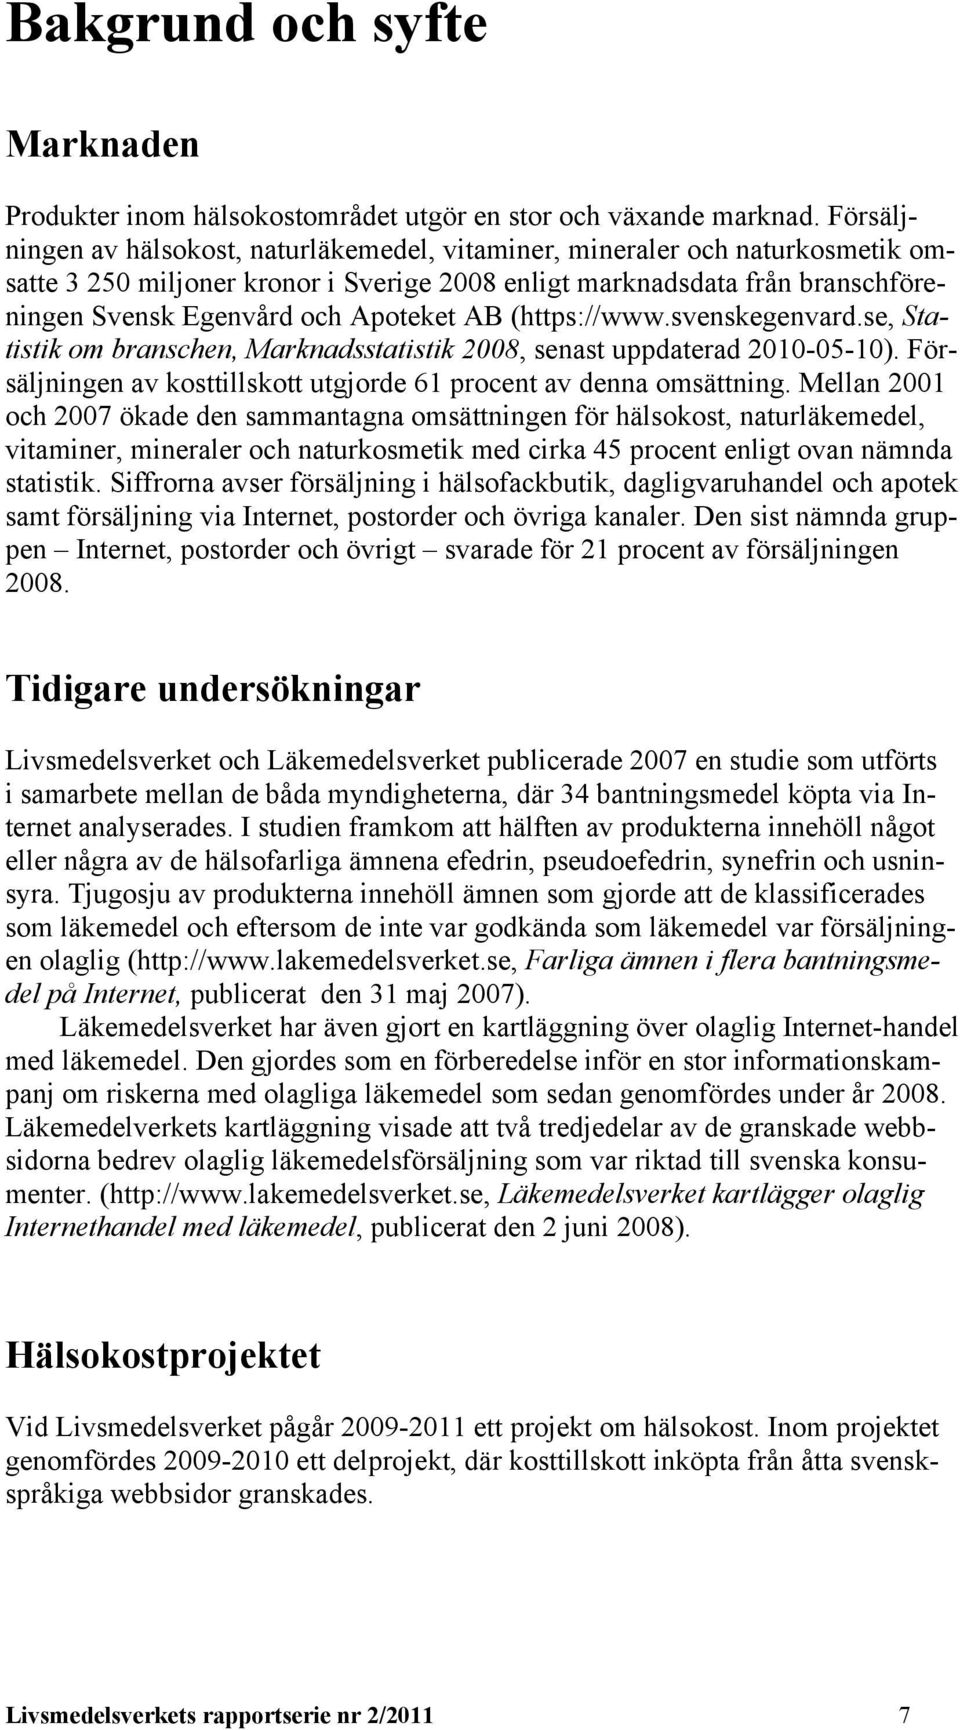 AB (https://www.svenskegenvard.se, Statistik om branschen, Marknadsstatistik 2008, senast uppdaterad 2010-05-10). Försäljningen av kosttillskott utgjorde 61 procent av denna omsättning.